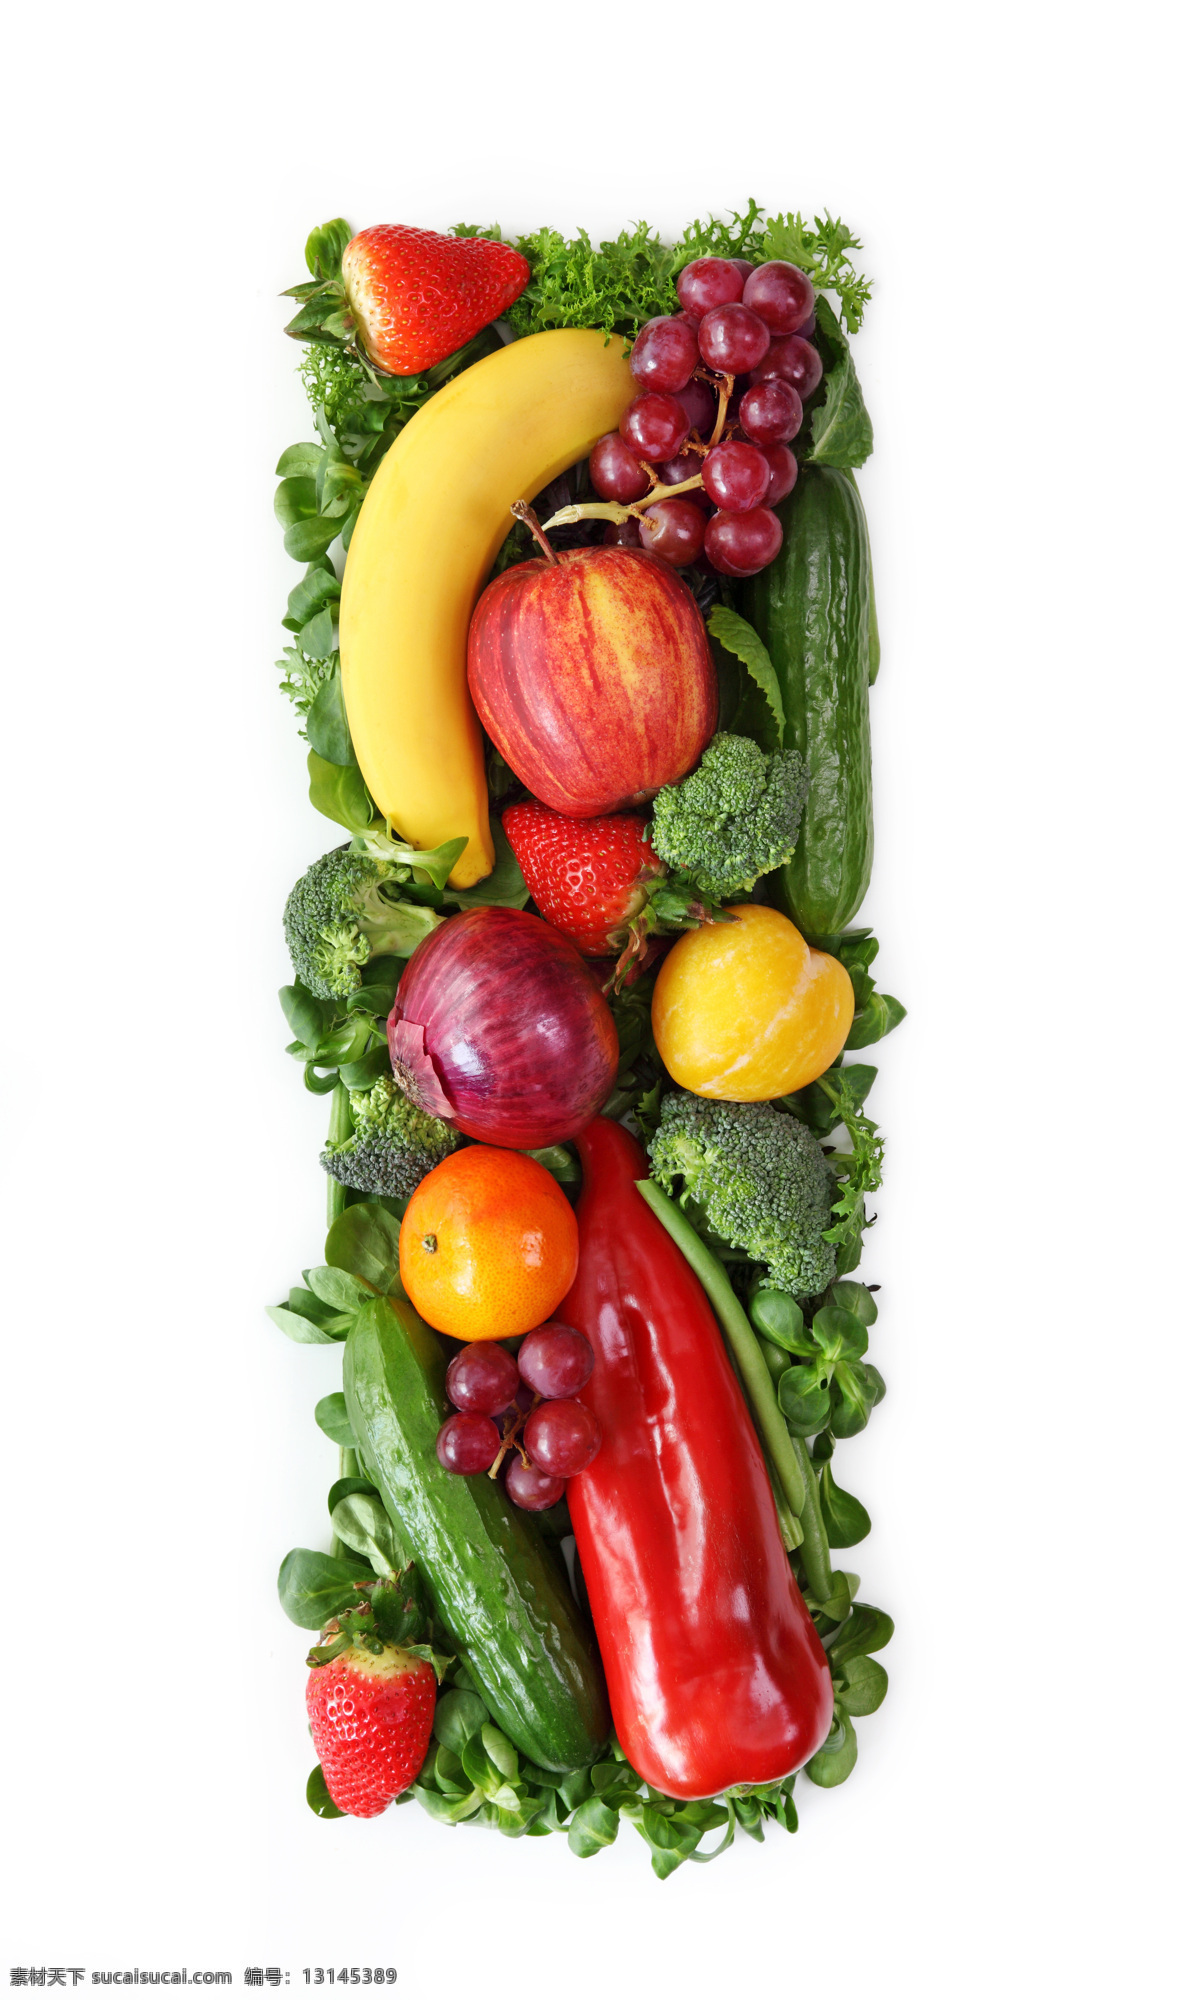 蔬菜水果 组成 字母 i 辣椒 葡萄 黄瓜 橙子 香蕉 蔬菜 水果 食物 水果图片 餐饮美食